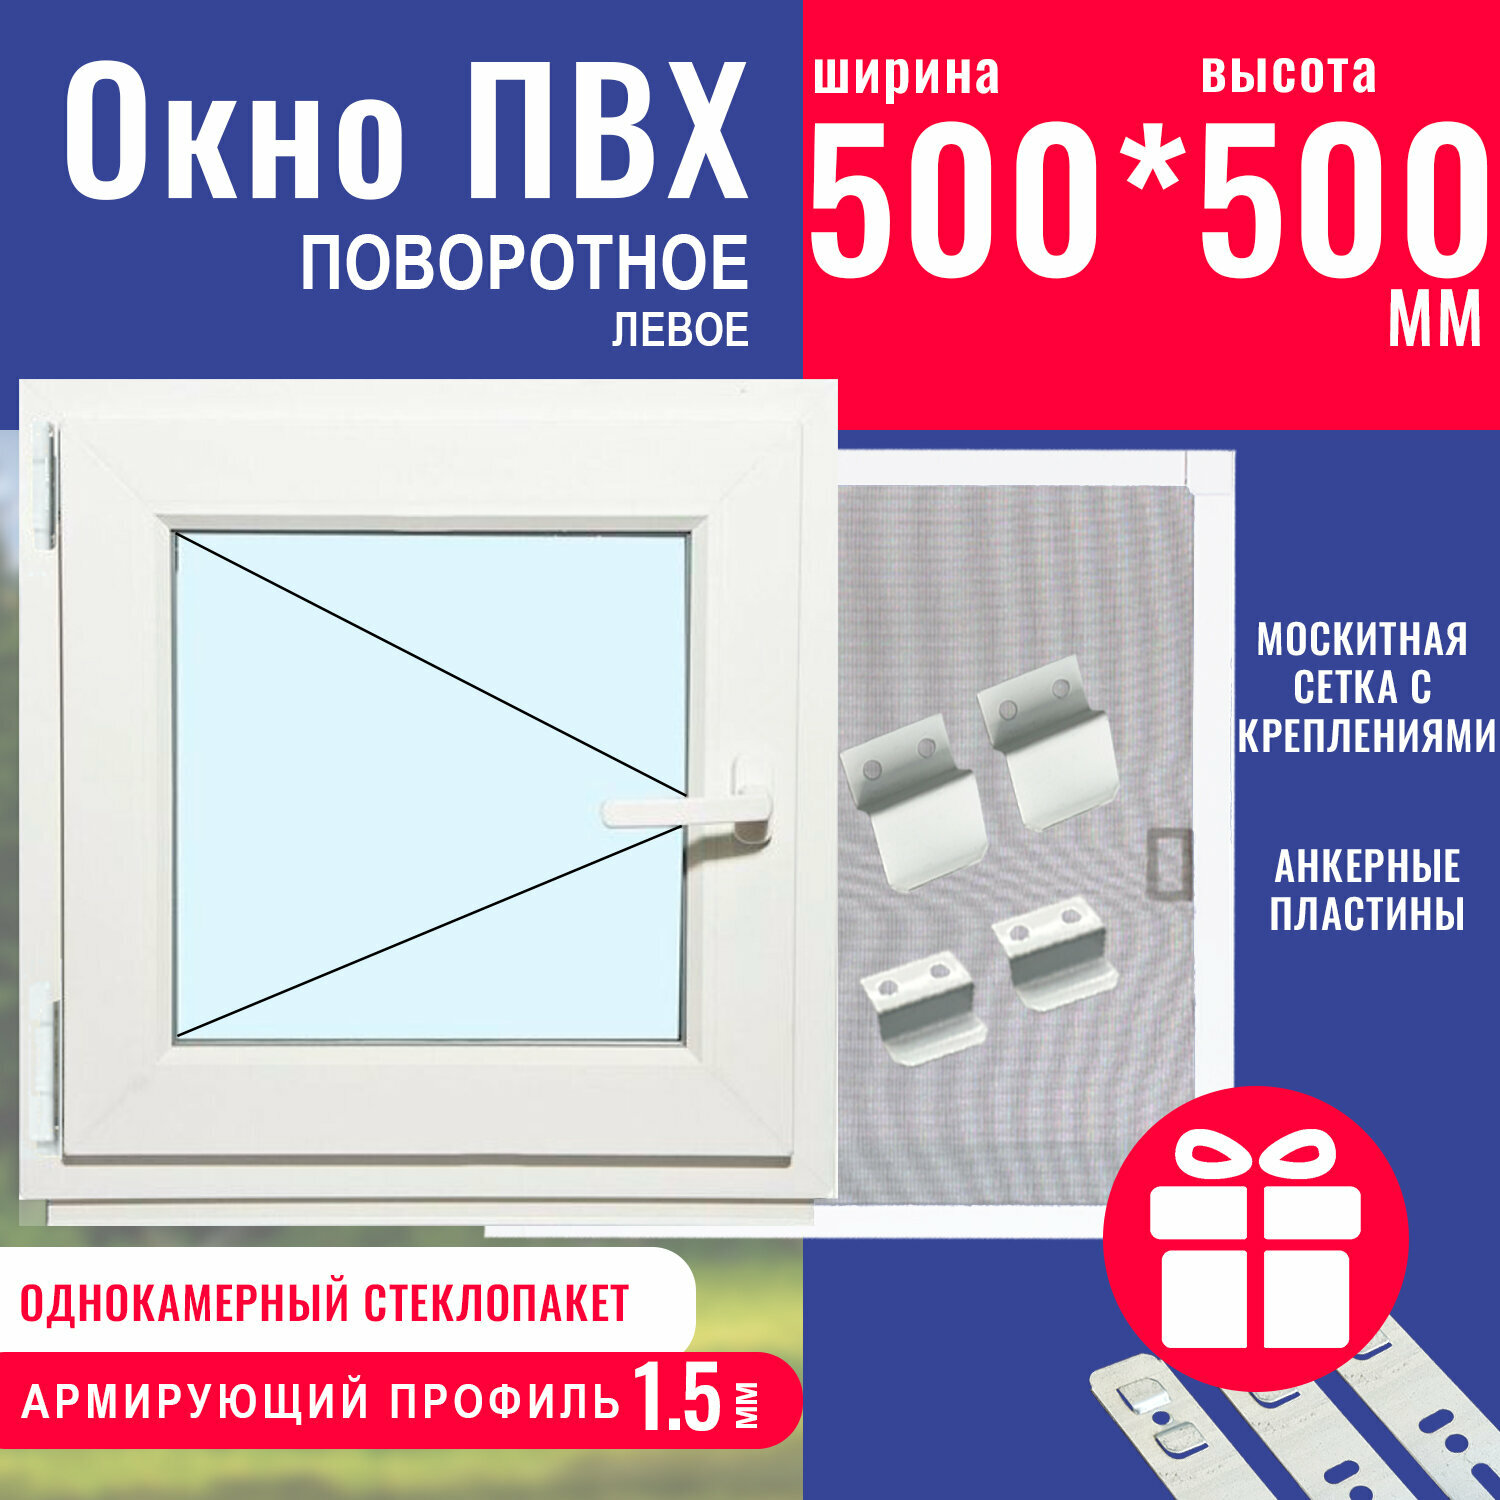 Окно ПВХ 500х500 мм поворотное левое однокамерный стеклопакет профиль Knipping 58c фурнитура Vorne